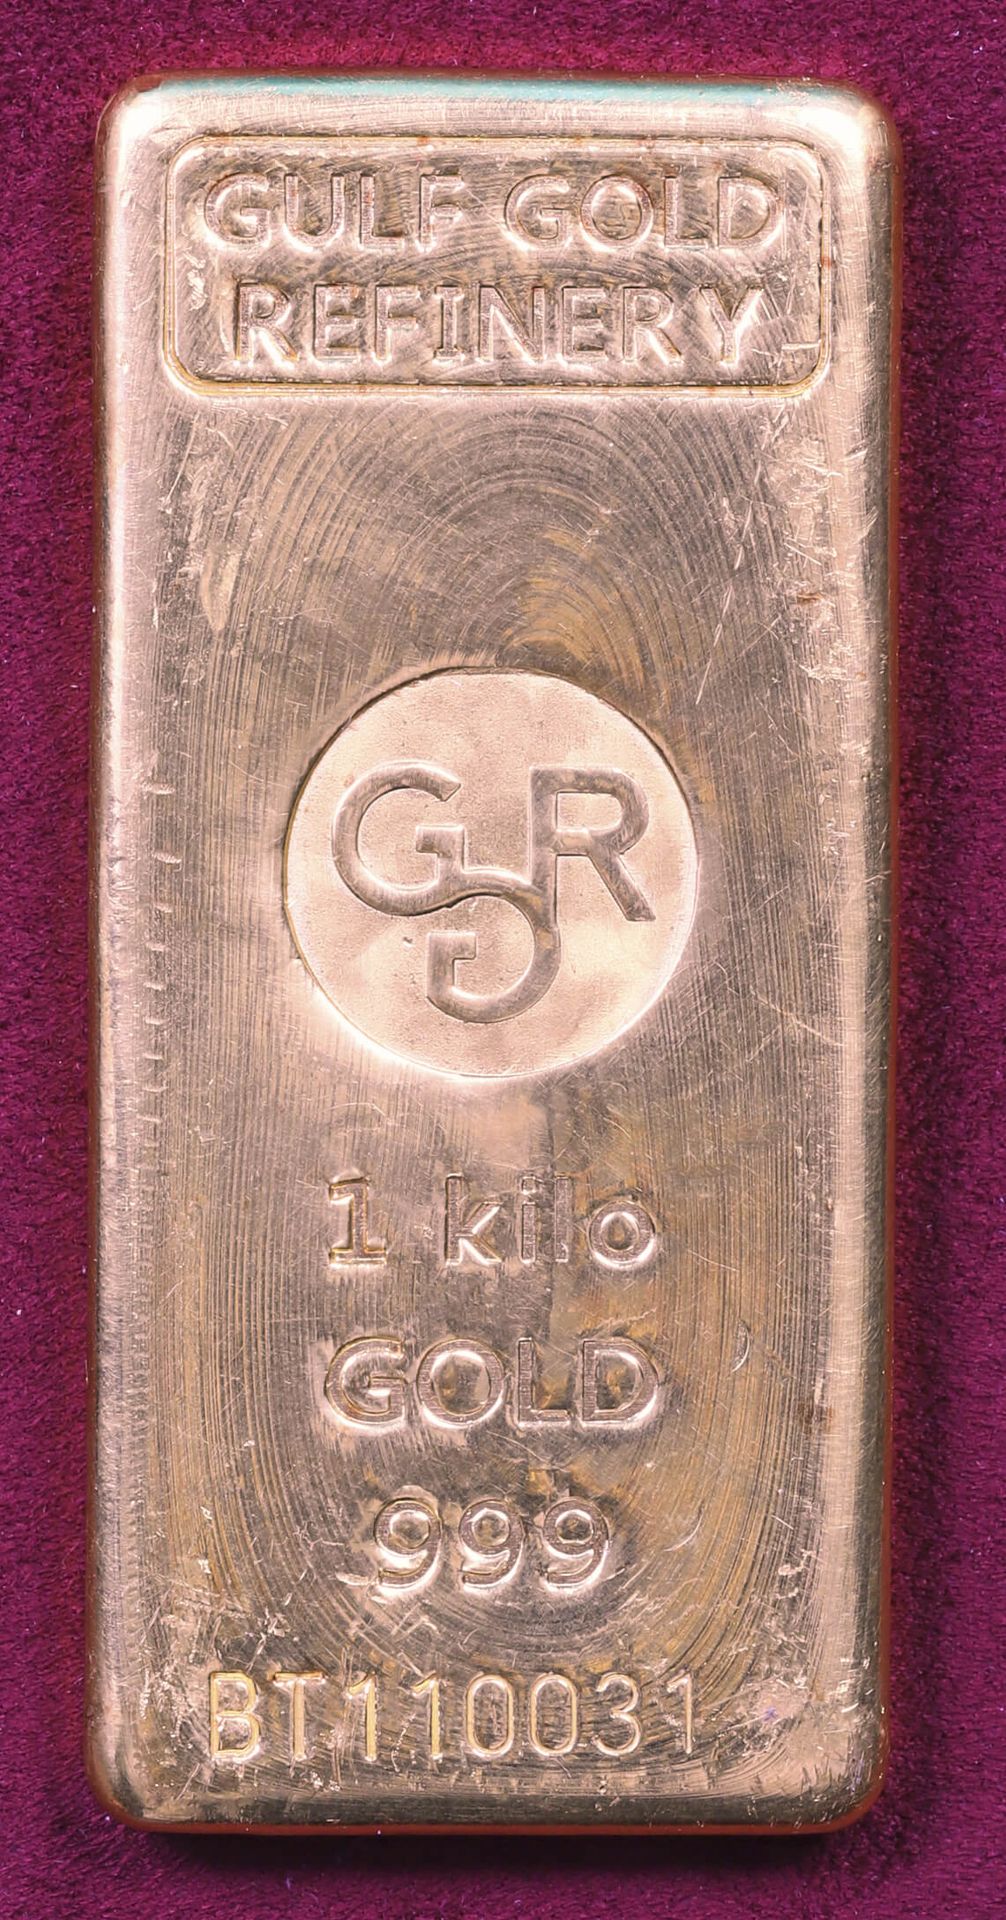 Null Barren Aus Gold (999‰)

Gulf gold refinery

Nummeriert BT110031

Gewicht 99&hellip;